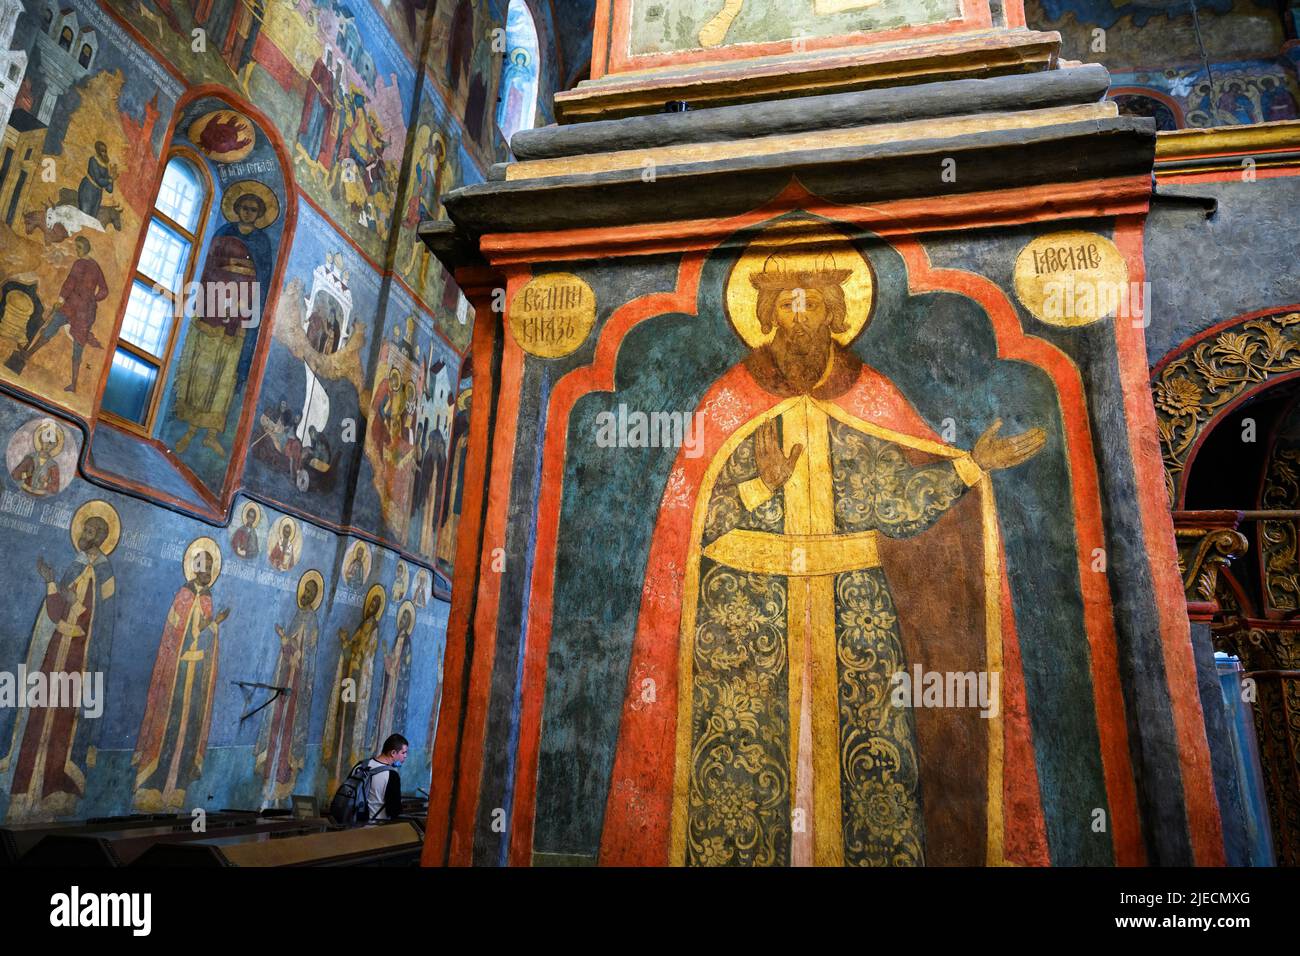 Moskau - 2. Jun 2021: Gemälde in der Erzengel-Kathedrale im Moskauer Kreml, Russland. Altes Fresko im russischen Tempel, historisches Wahrzeichen Moskaus. Orna Stockfoto